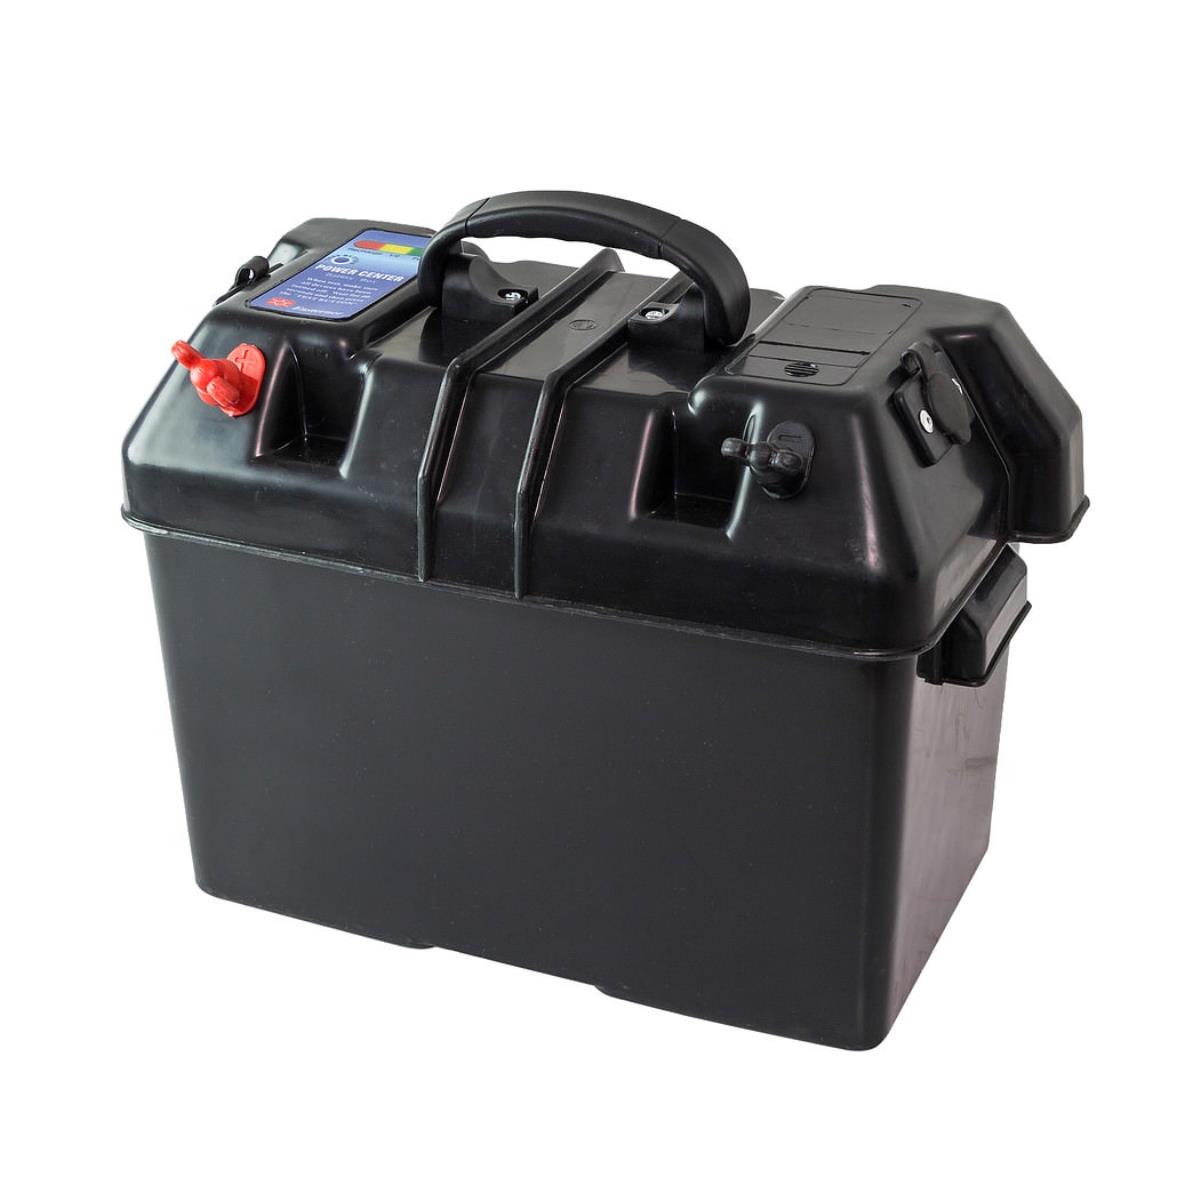 Ящик для АКБ 335х185х225 мм с клеммами и прикуривателями (C11537) ящик для хранения вещей zdk